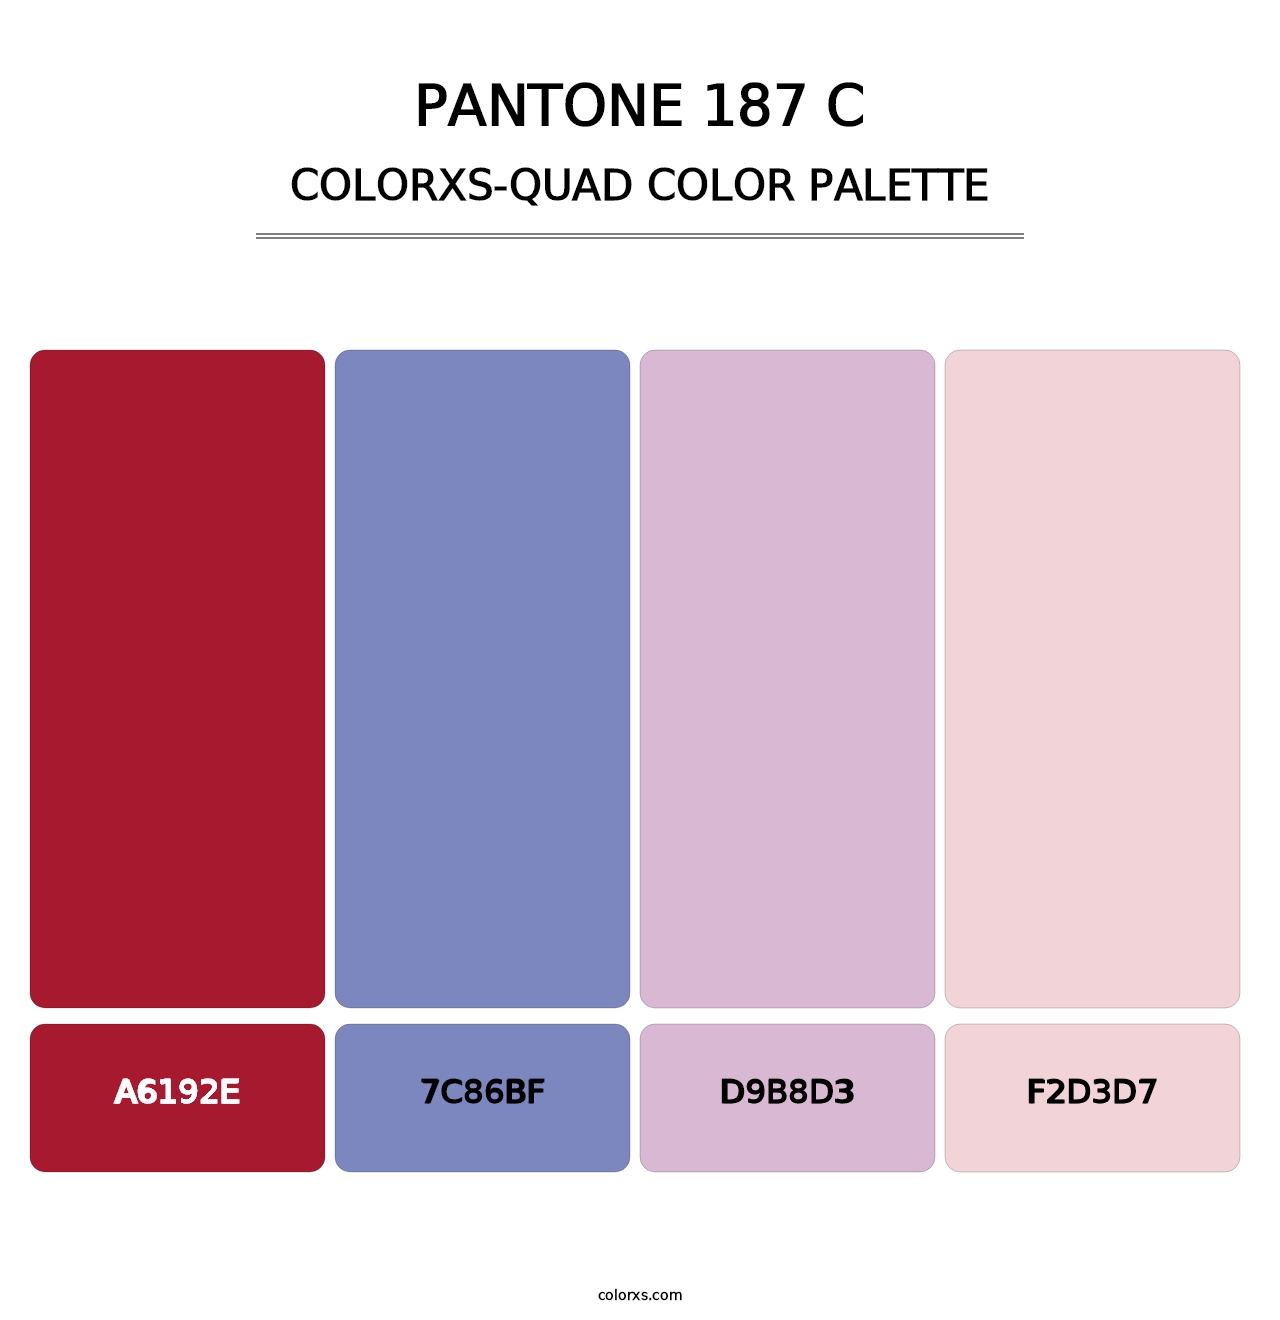 PANTONE 187 C - Colorxs Quad Palette